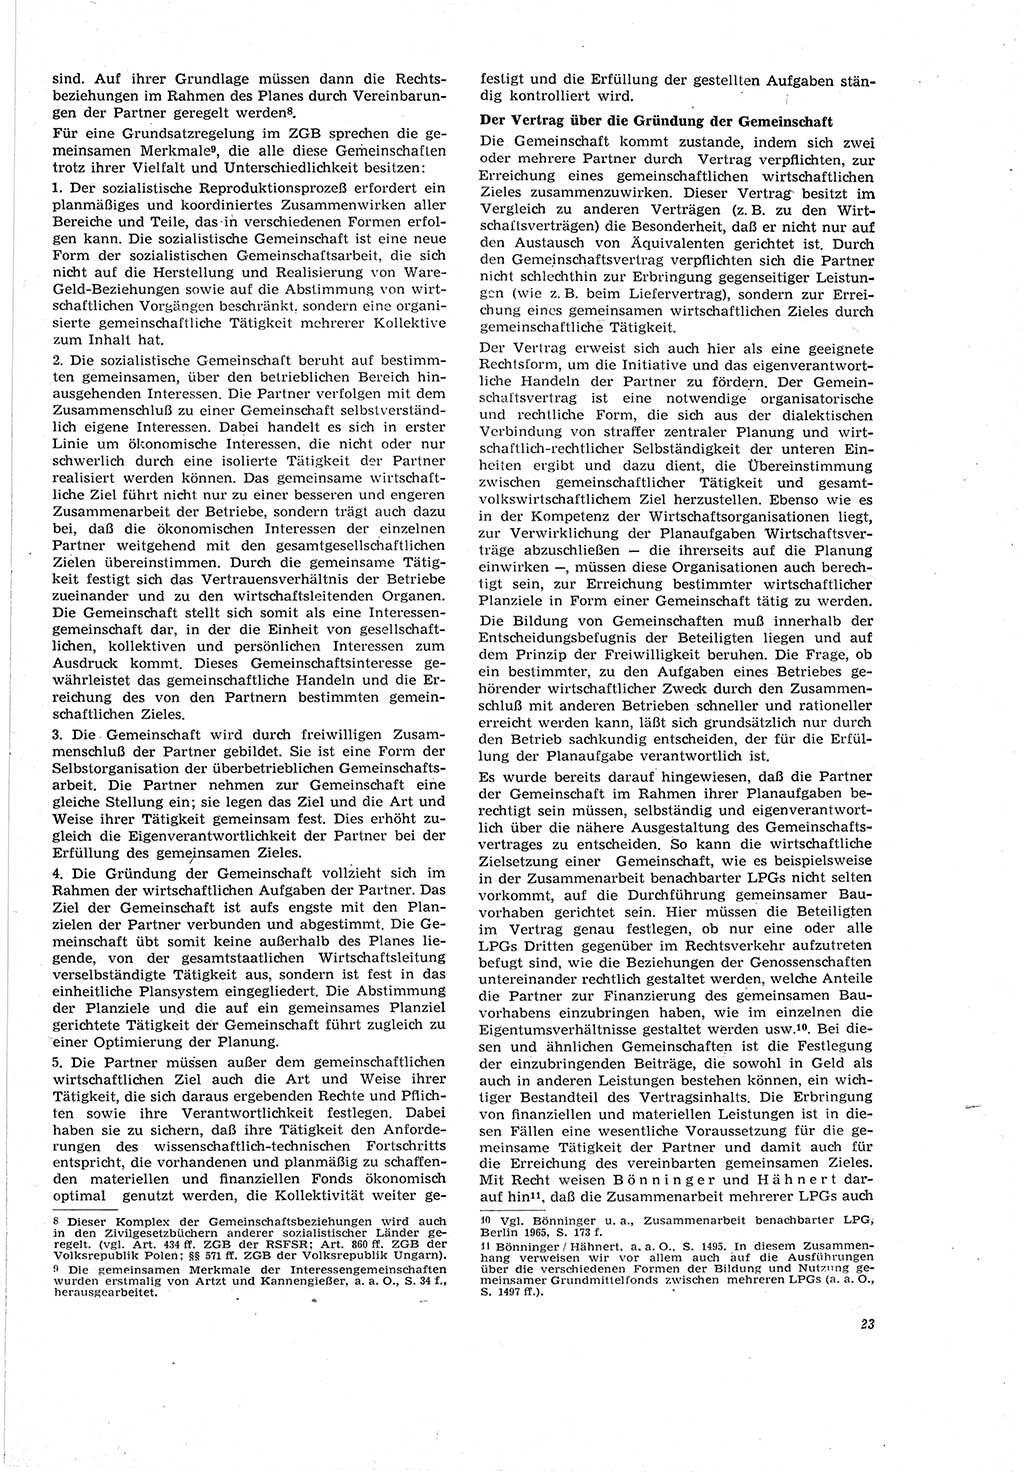 Neue Justiz (NJ), Zeitschrift für Recht und Rechtswissenschaft [Deutsche Demokratische Republik (DDR)], 20. Jahrgang 1966, Seite 23 (NJ DDR 1966, S. 23)